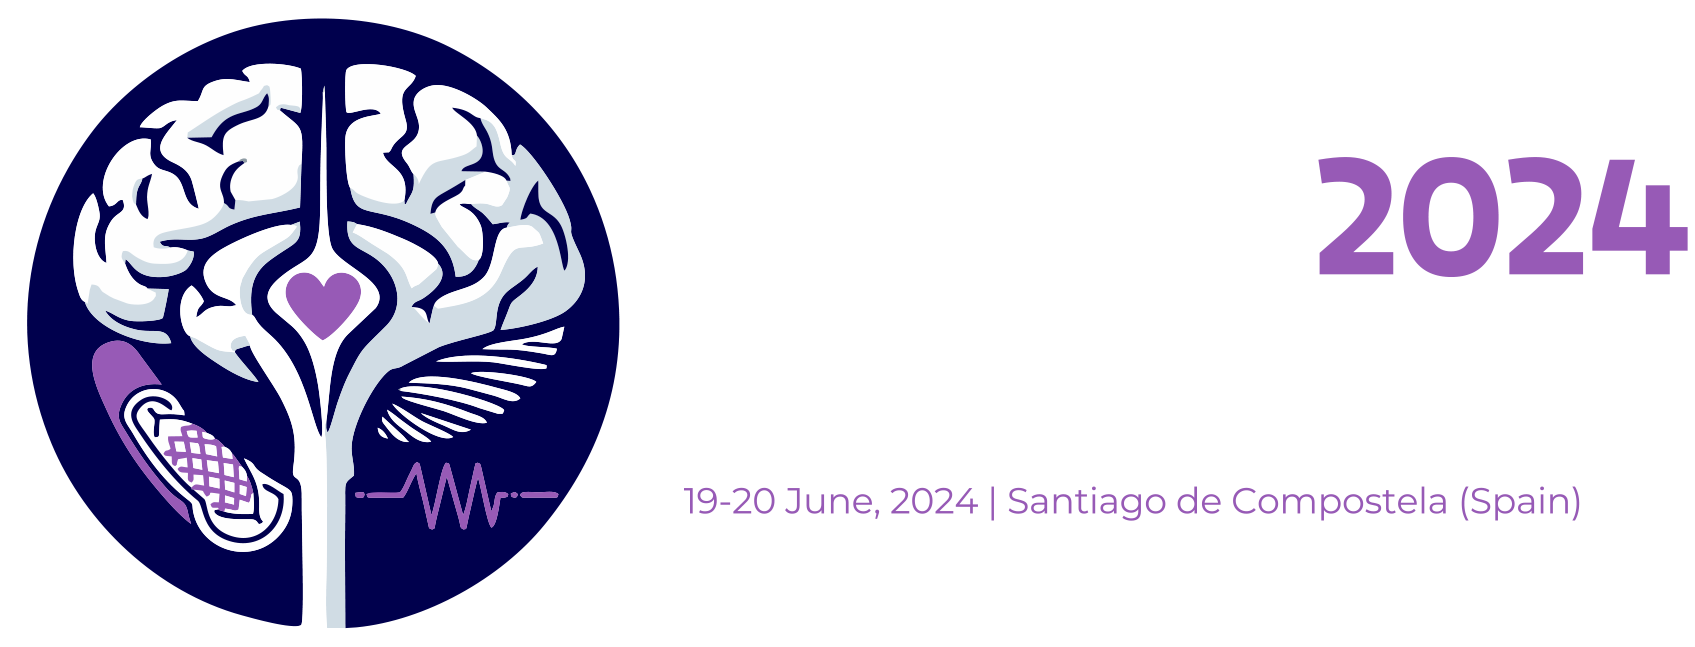 SYMTAS 2024 - Santiago de Compostela